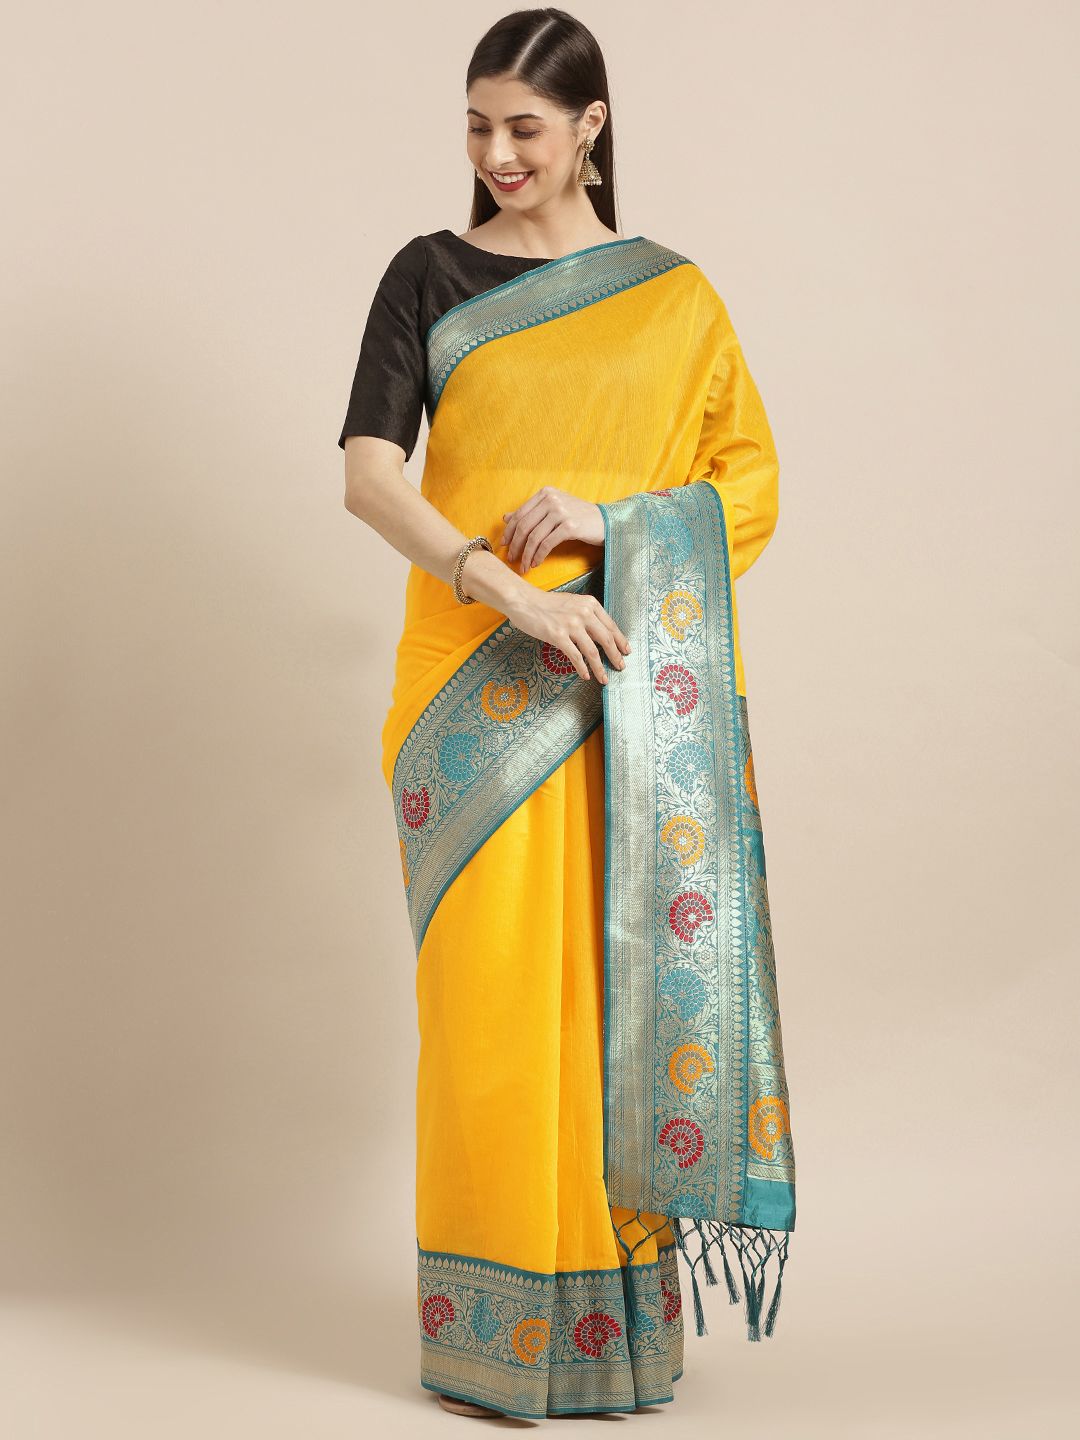 Varkala Silk Sarees Yellow Cotton Blend Solid Banarasi Saree Price in India